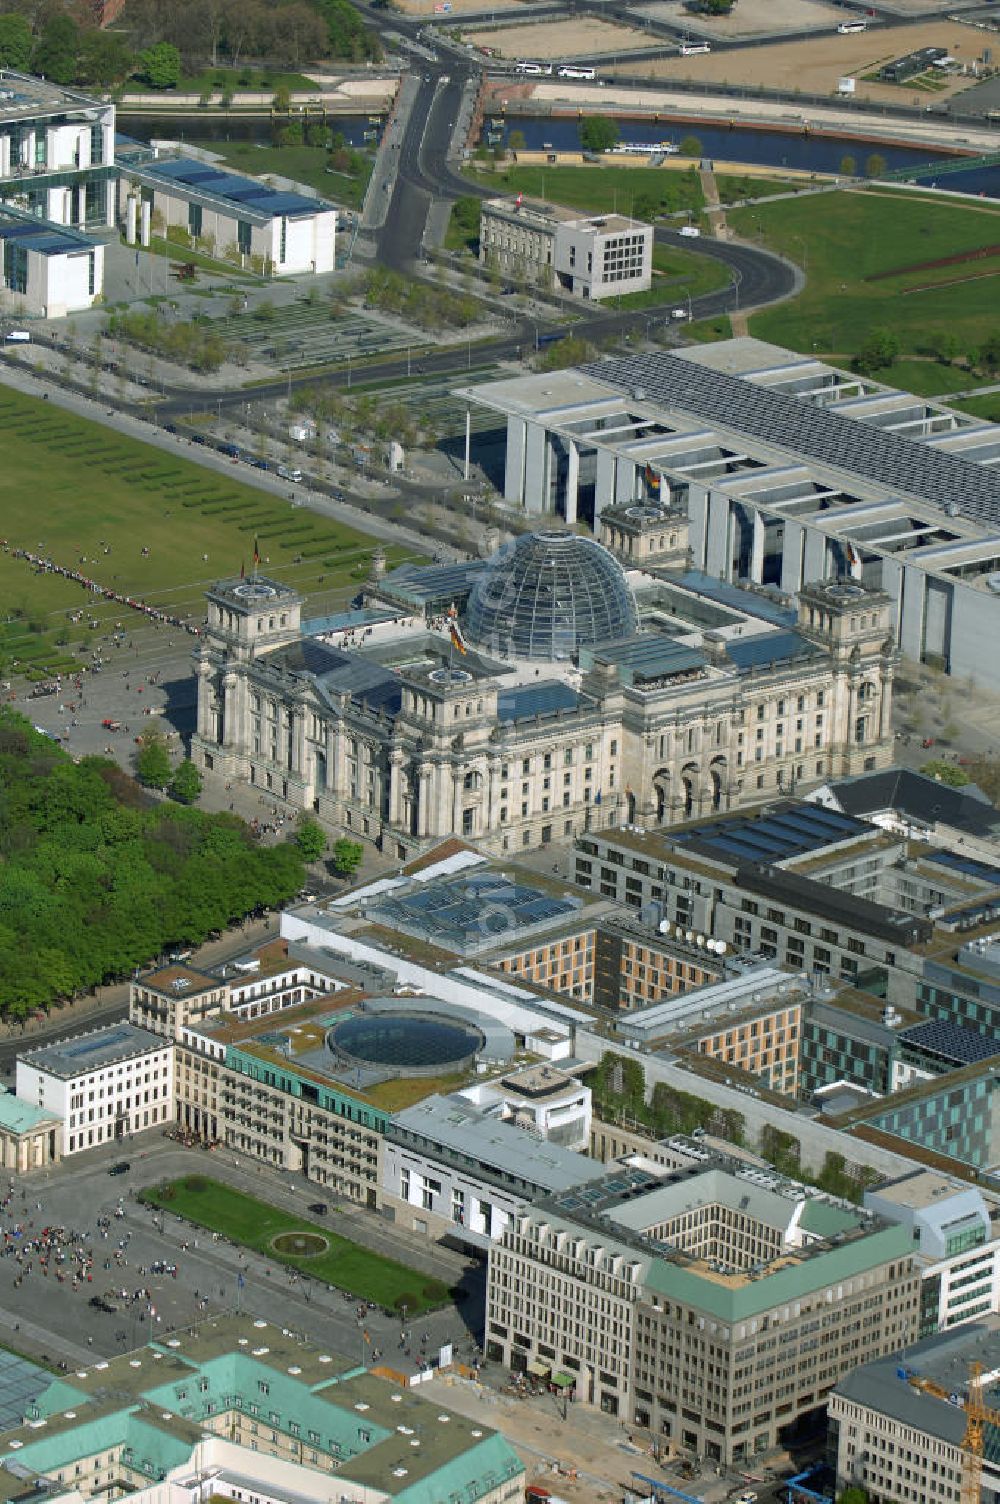 Berlin aus der Vogelperspektive: Bereich des Pariser Platz am Brandenburger Tor in Berlin-Mitte